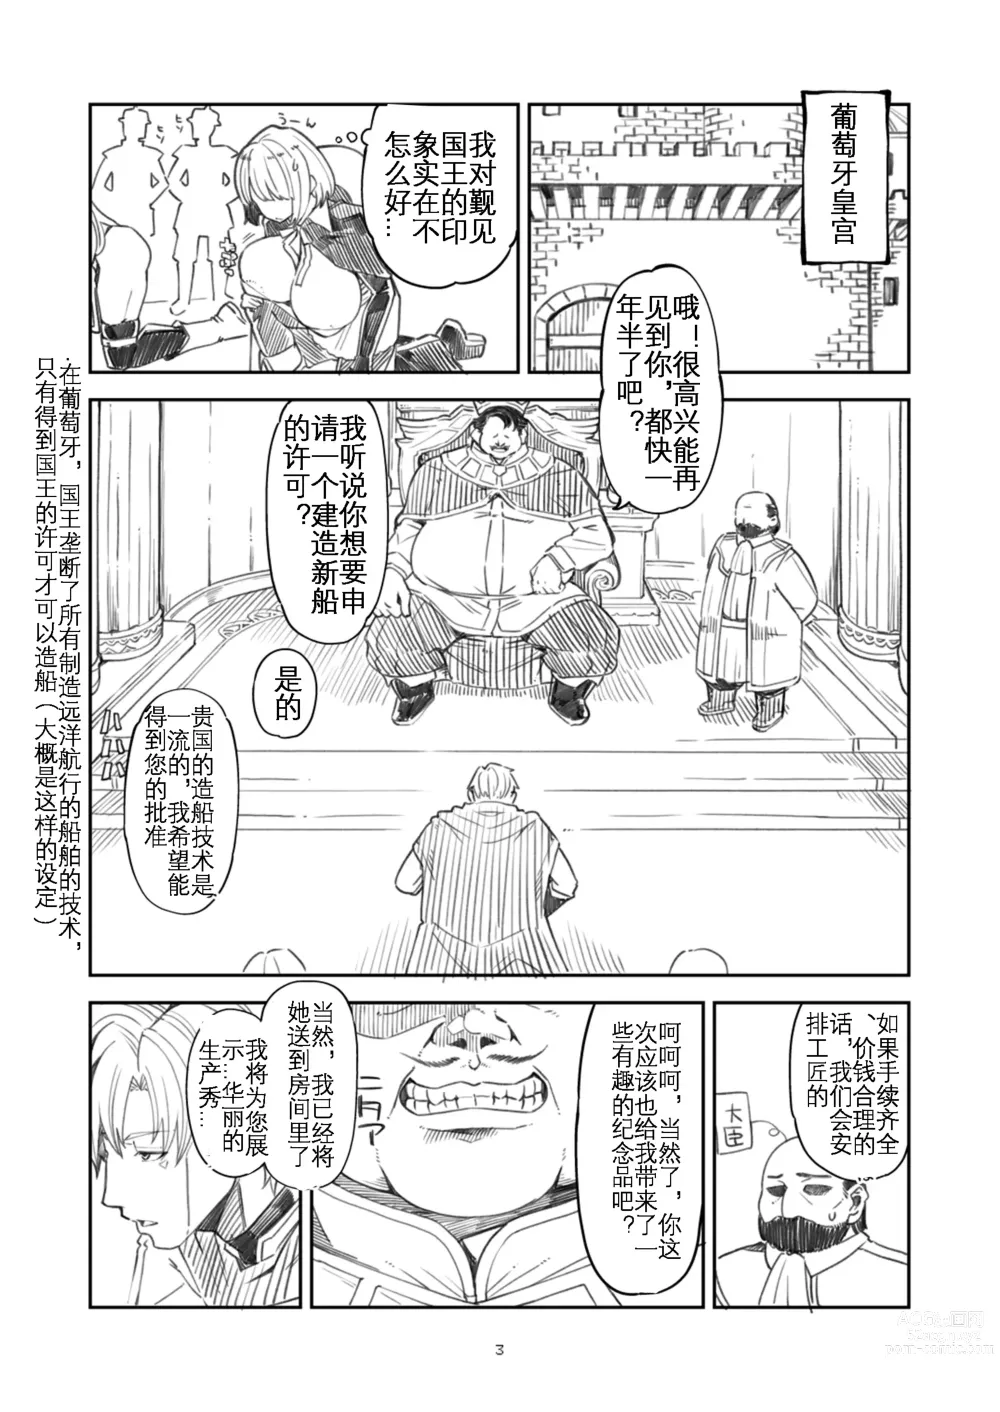 Page 3 of doujinshi Benmusu Bouken no Sho 11 Portoga Hen Sono 1